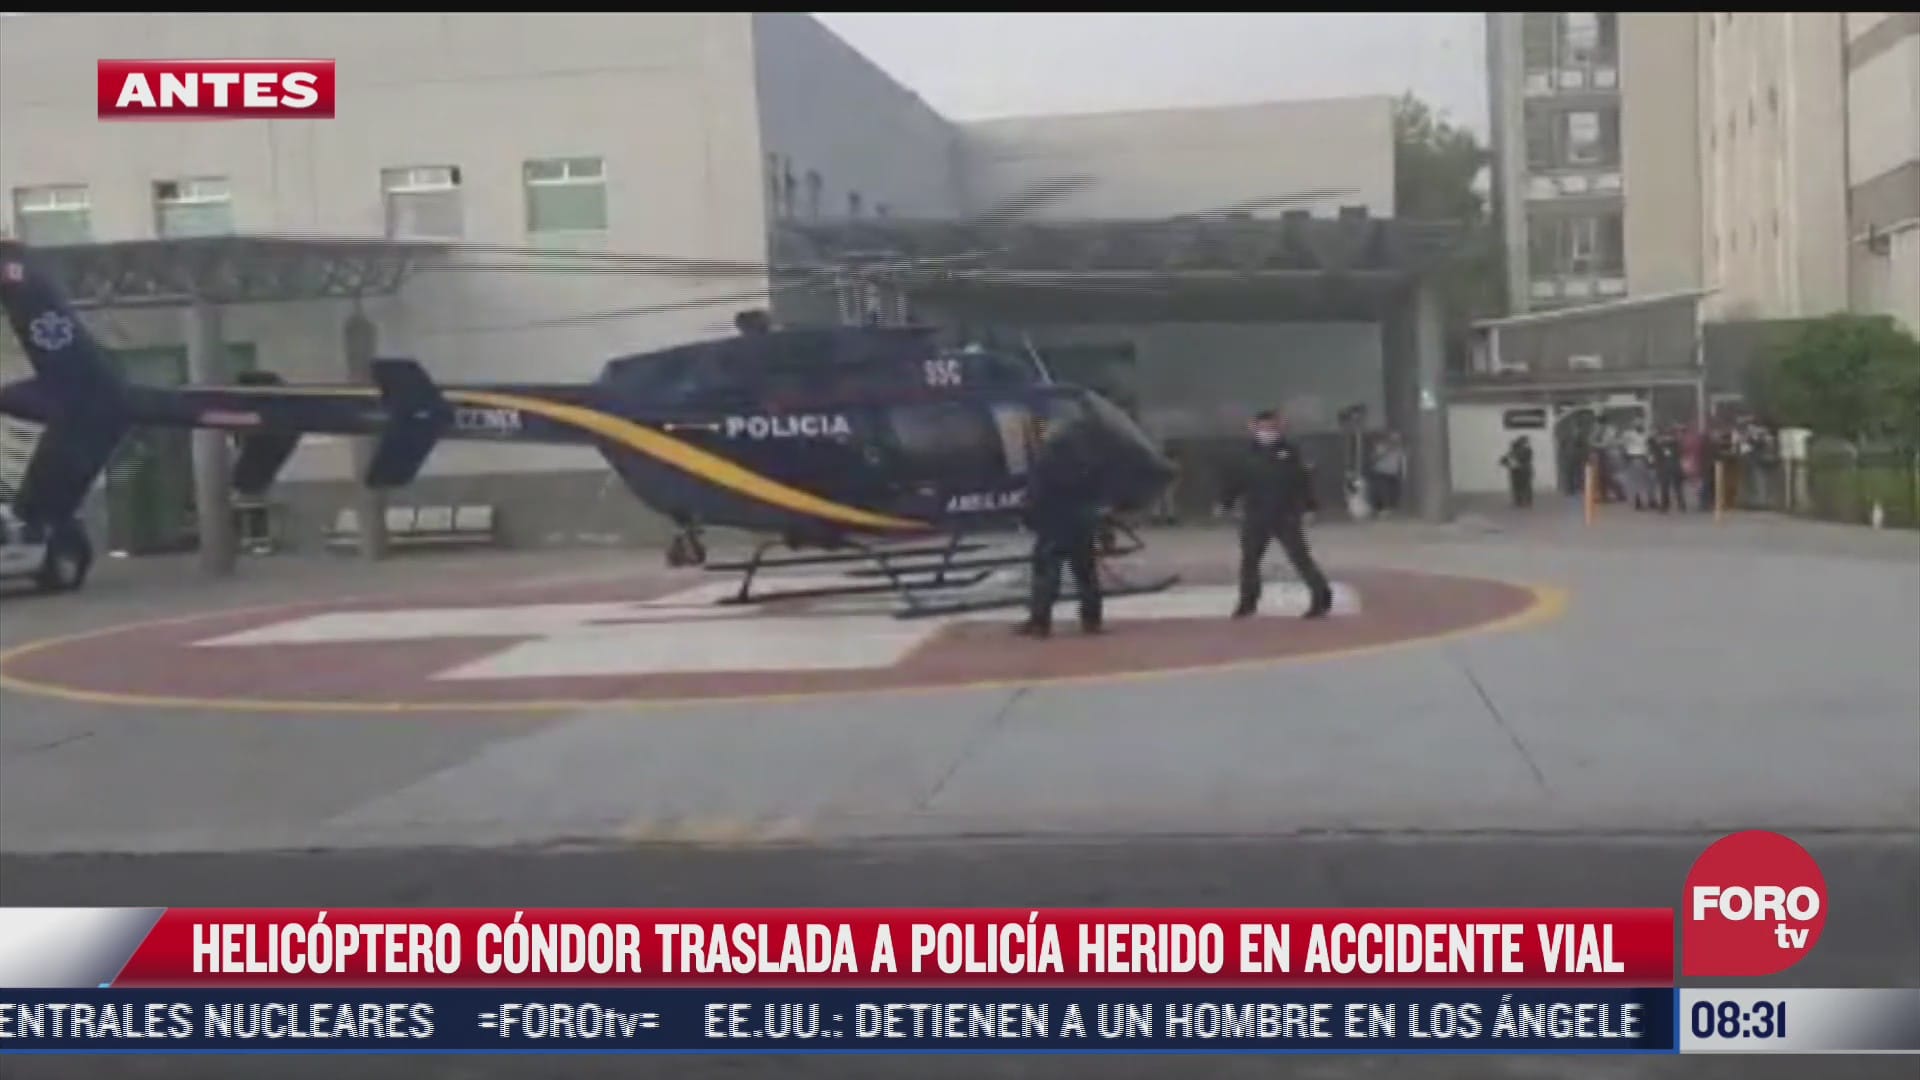 agrupamiento condores traslada en helicoptero a policia lesionado tras choque